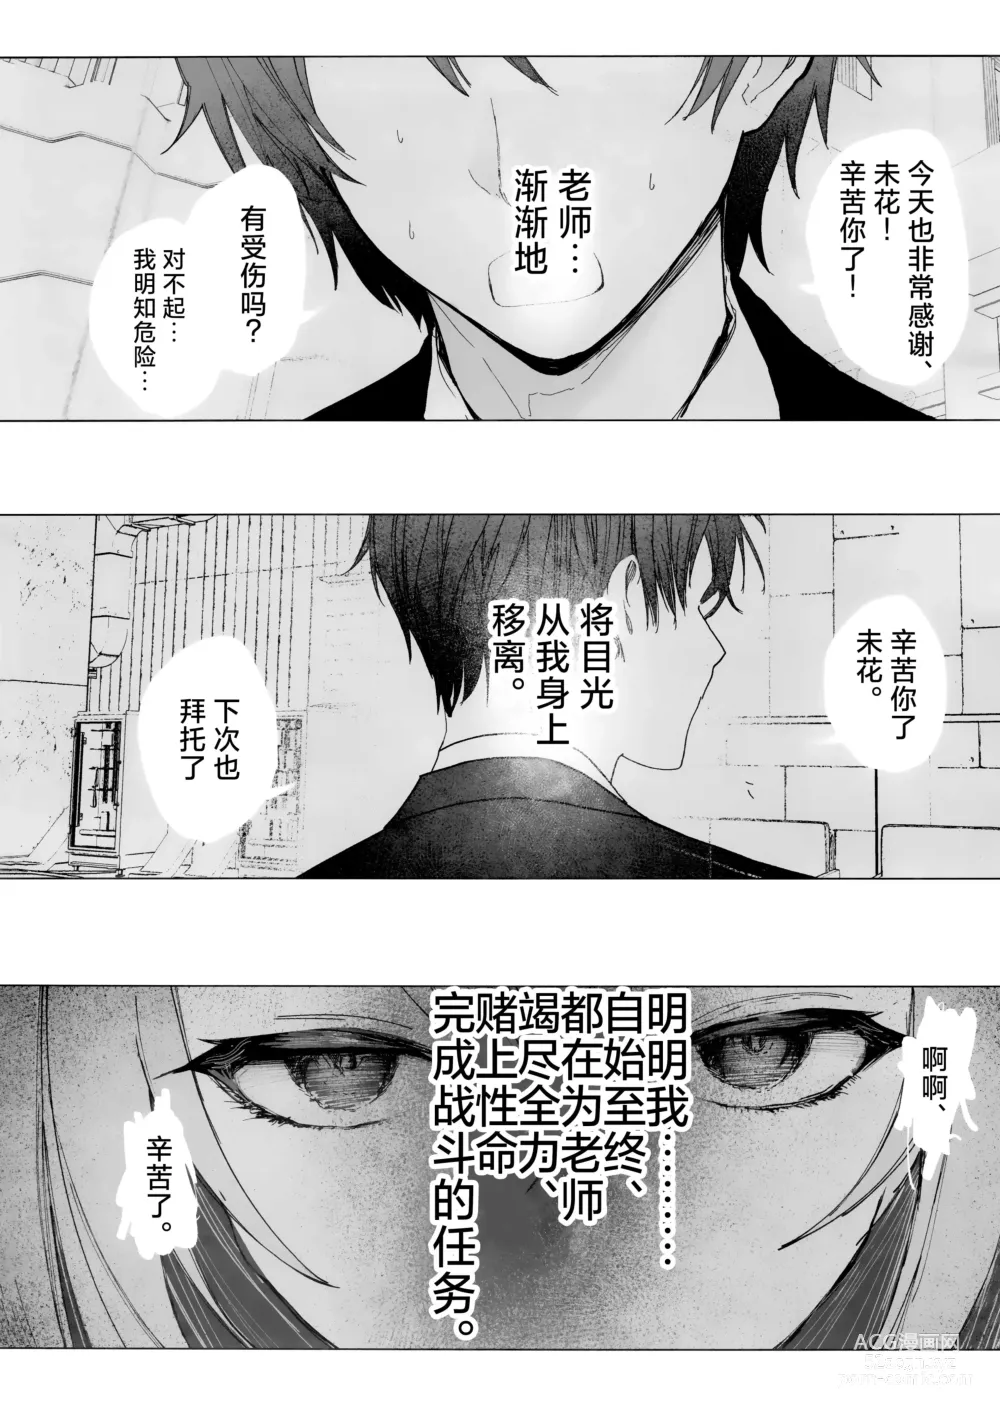 Page 8 of doujinshi 新约 挥发性的幸福